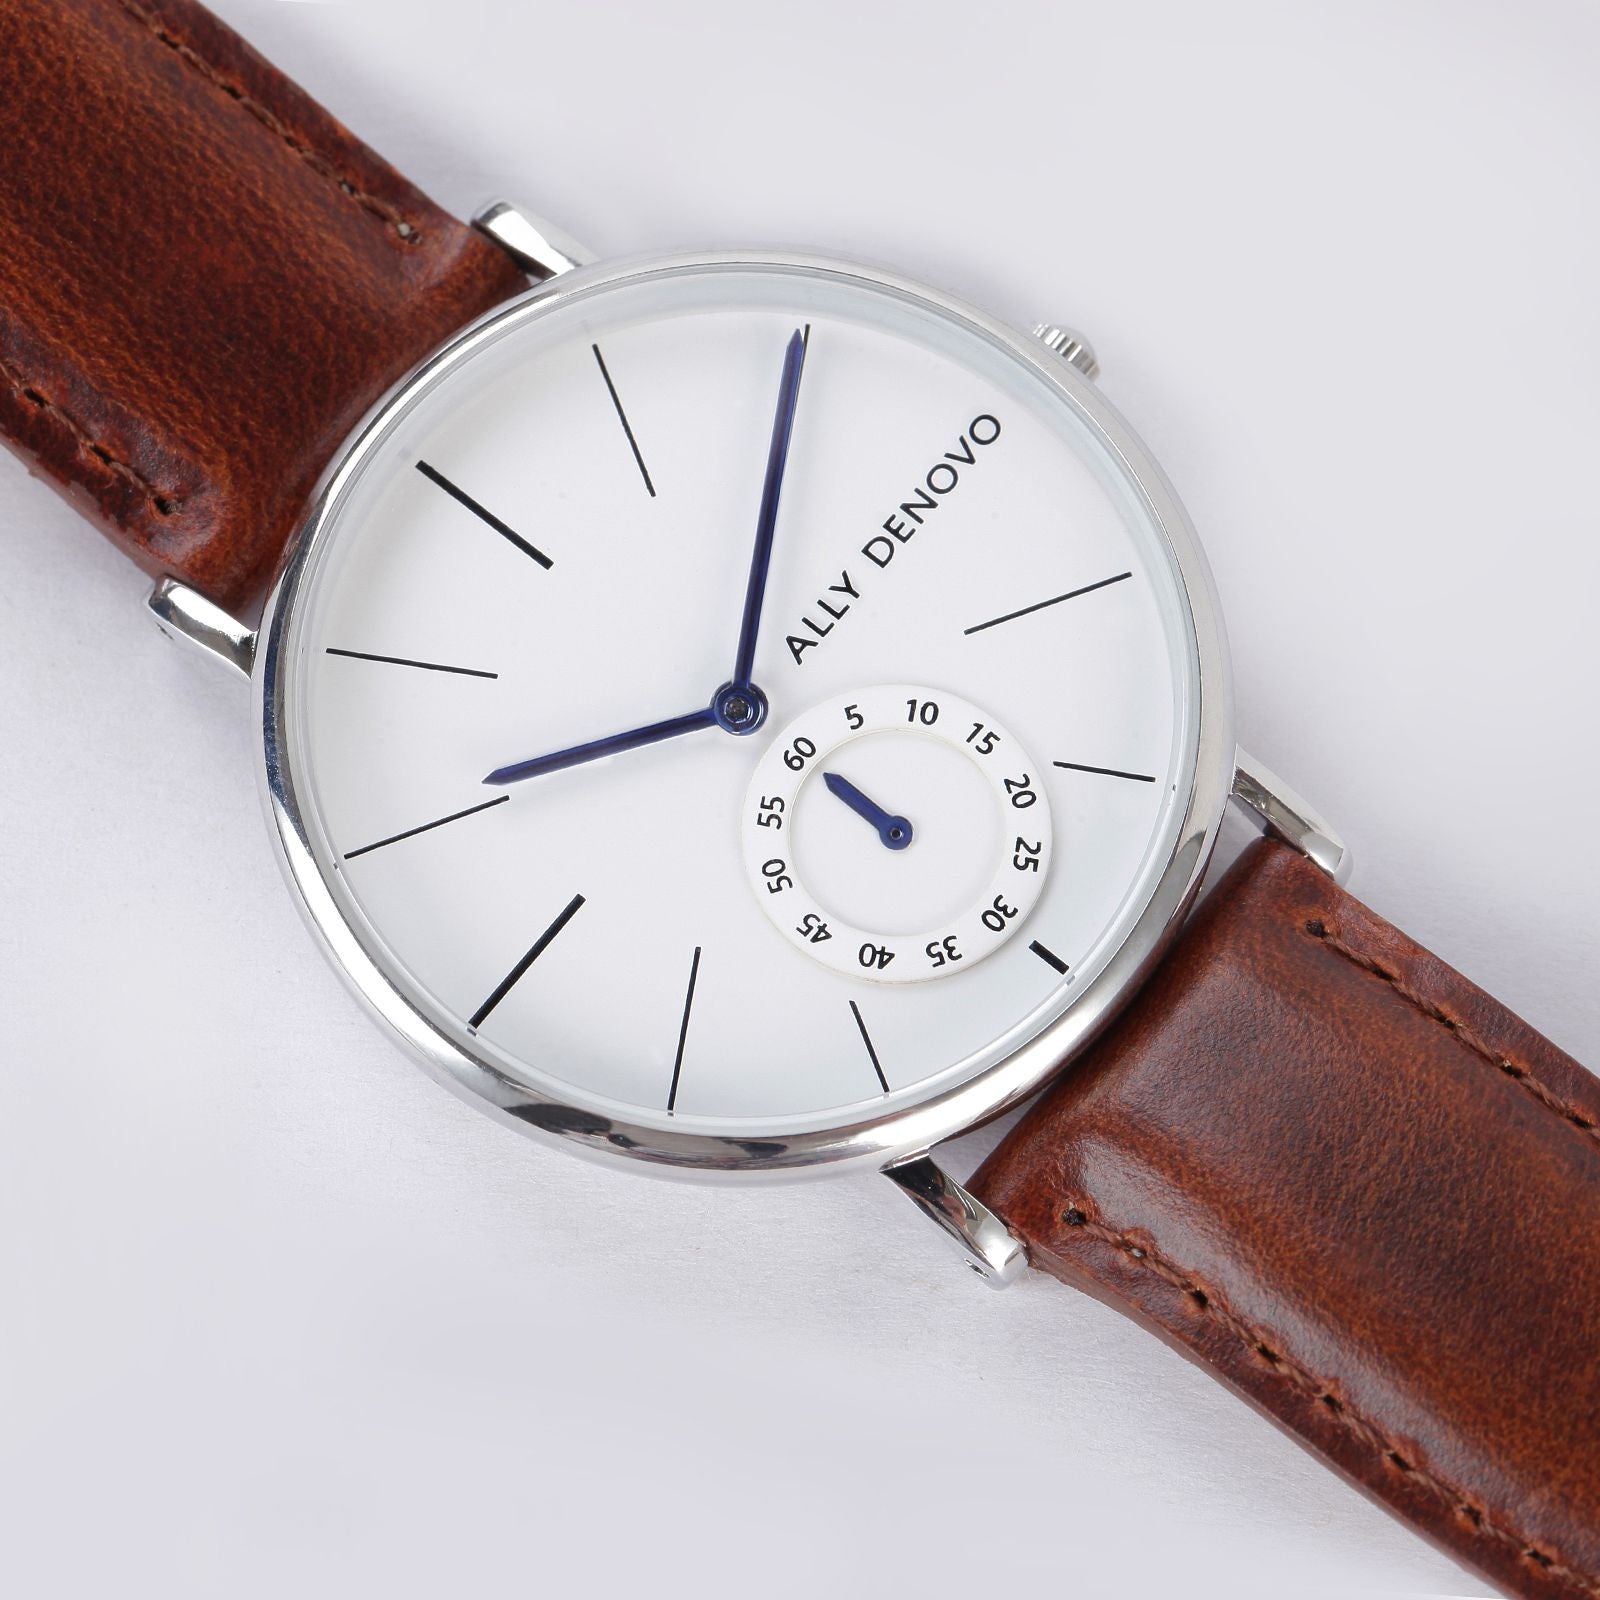 【女款36mm】全時經典腕錶－銀框紅棕色真皮錶帶 AF5001.2